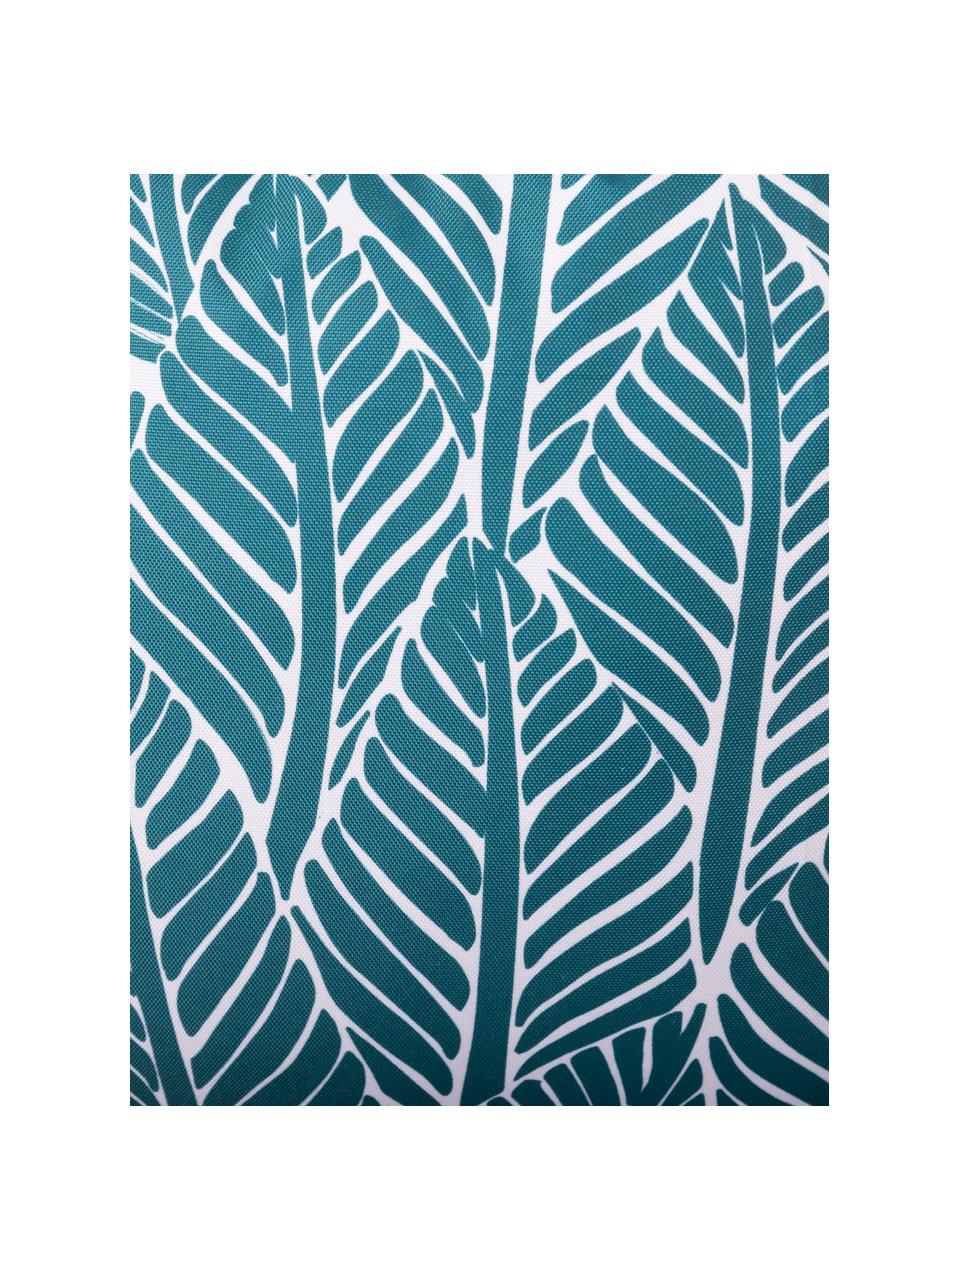 Outdoor-Kissen Sanka mit Blättermotiv, mit Inlett, 100% Polyester, Blau, B 45 x L 45 cm